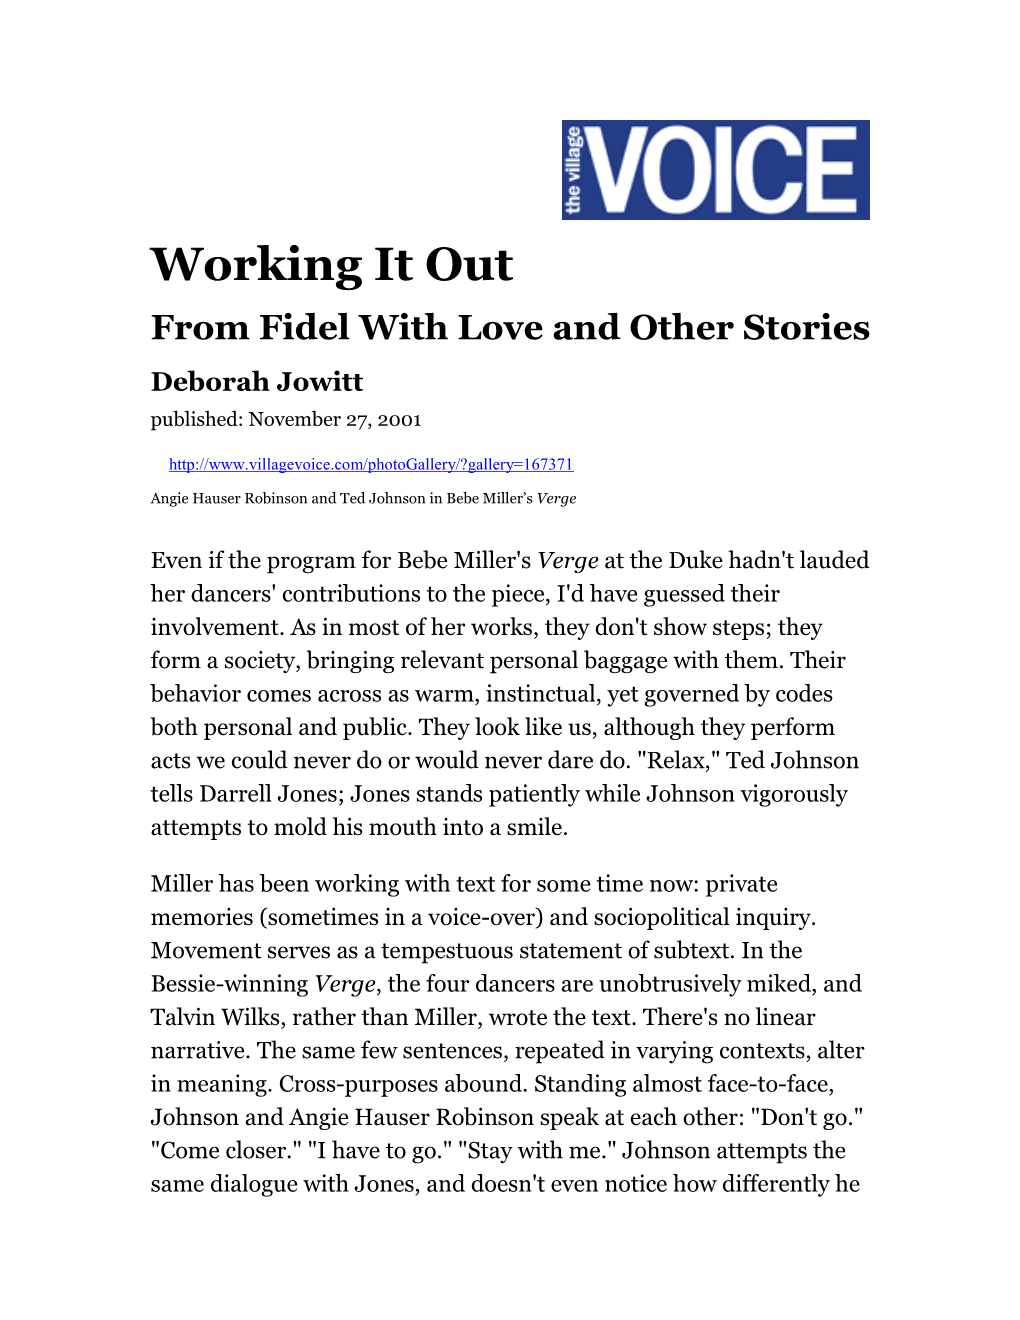 Village Voice, 2001